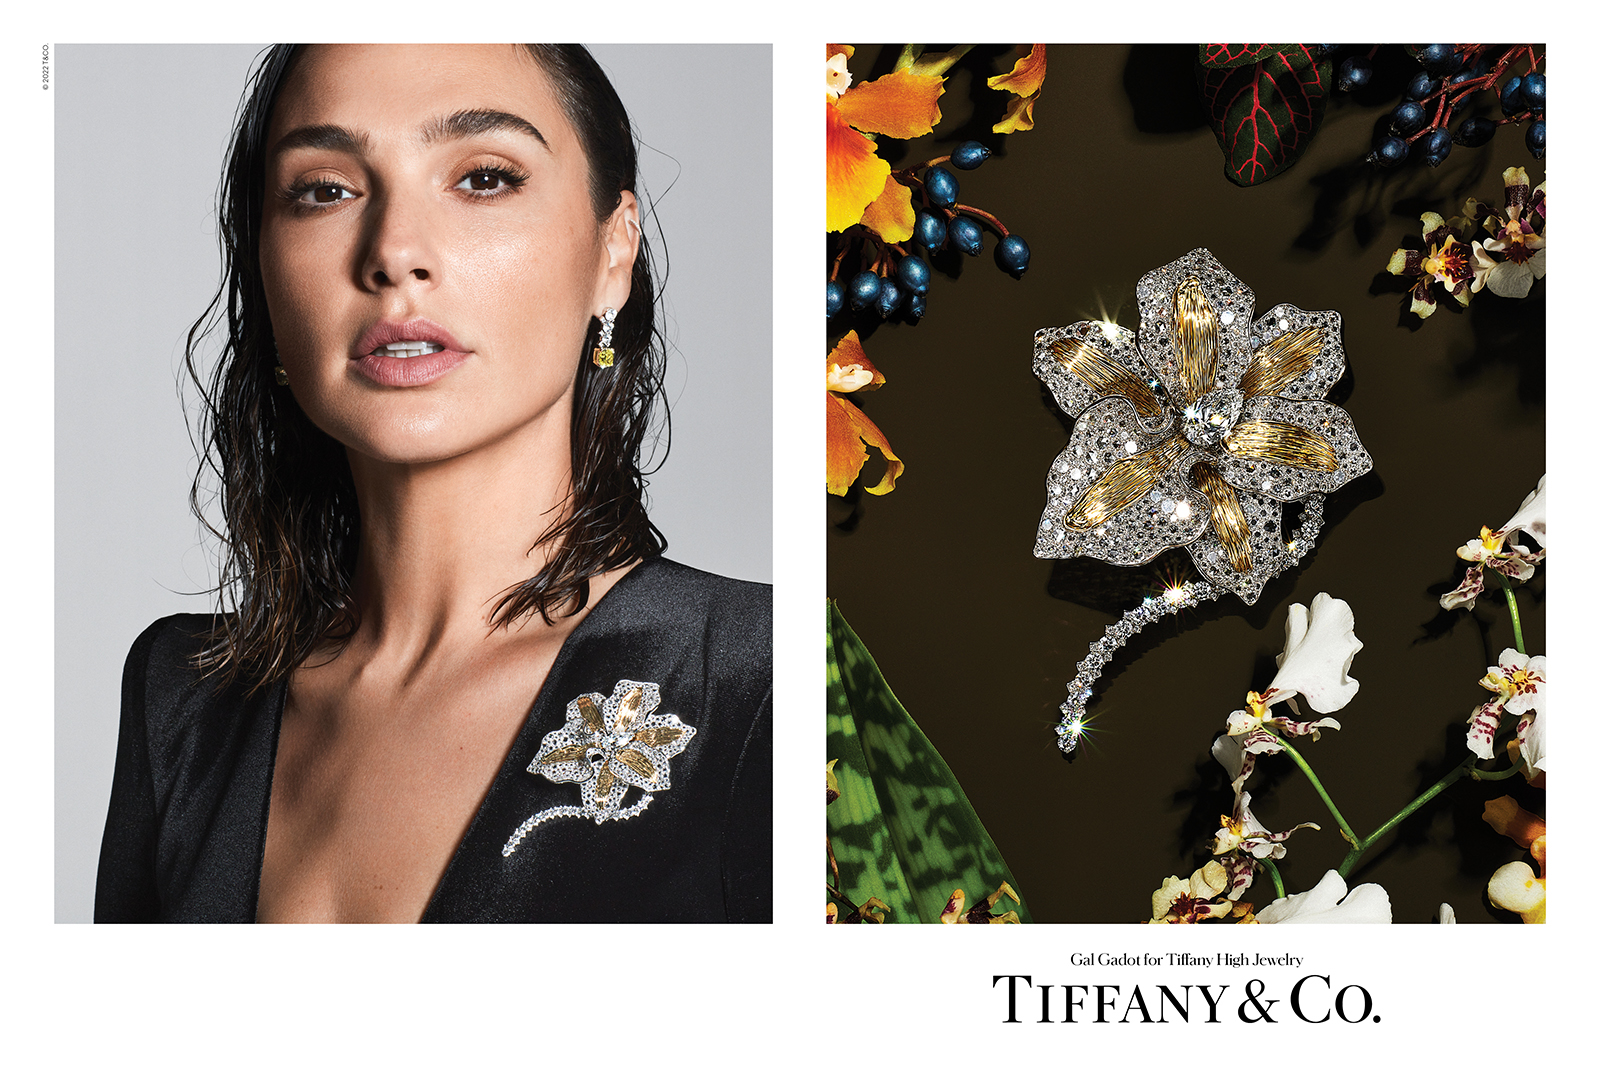 Галь Гадот стала лицом высокой ювелирной линии Tiffany & Co. (фото 1)